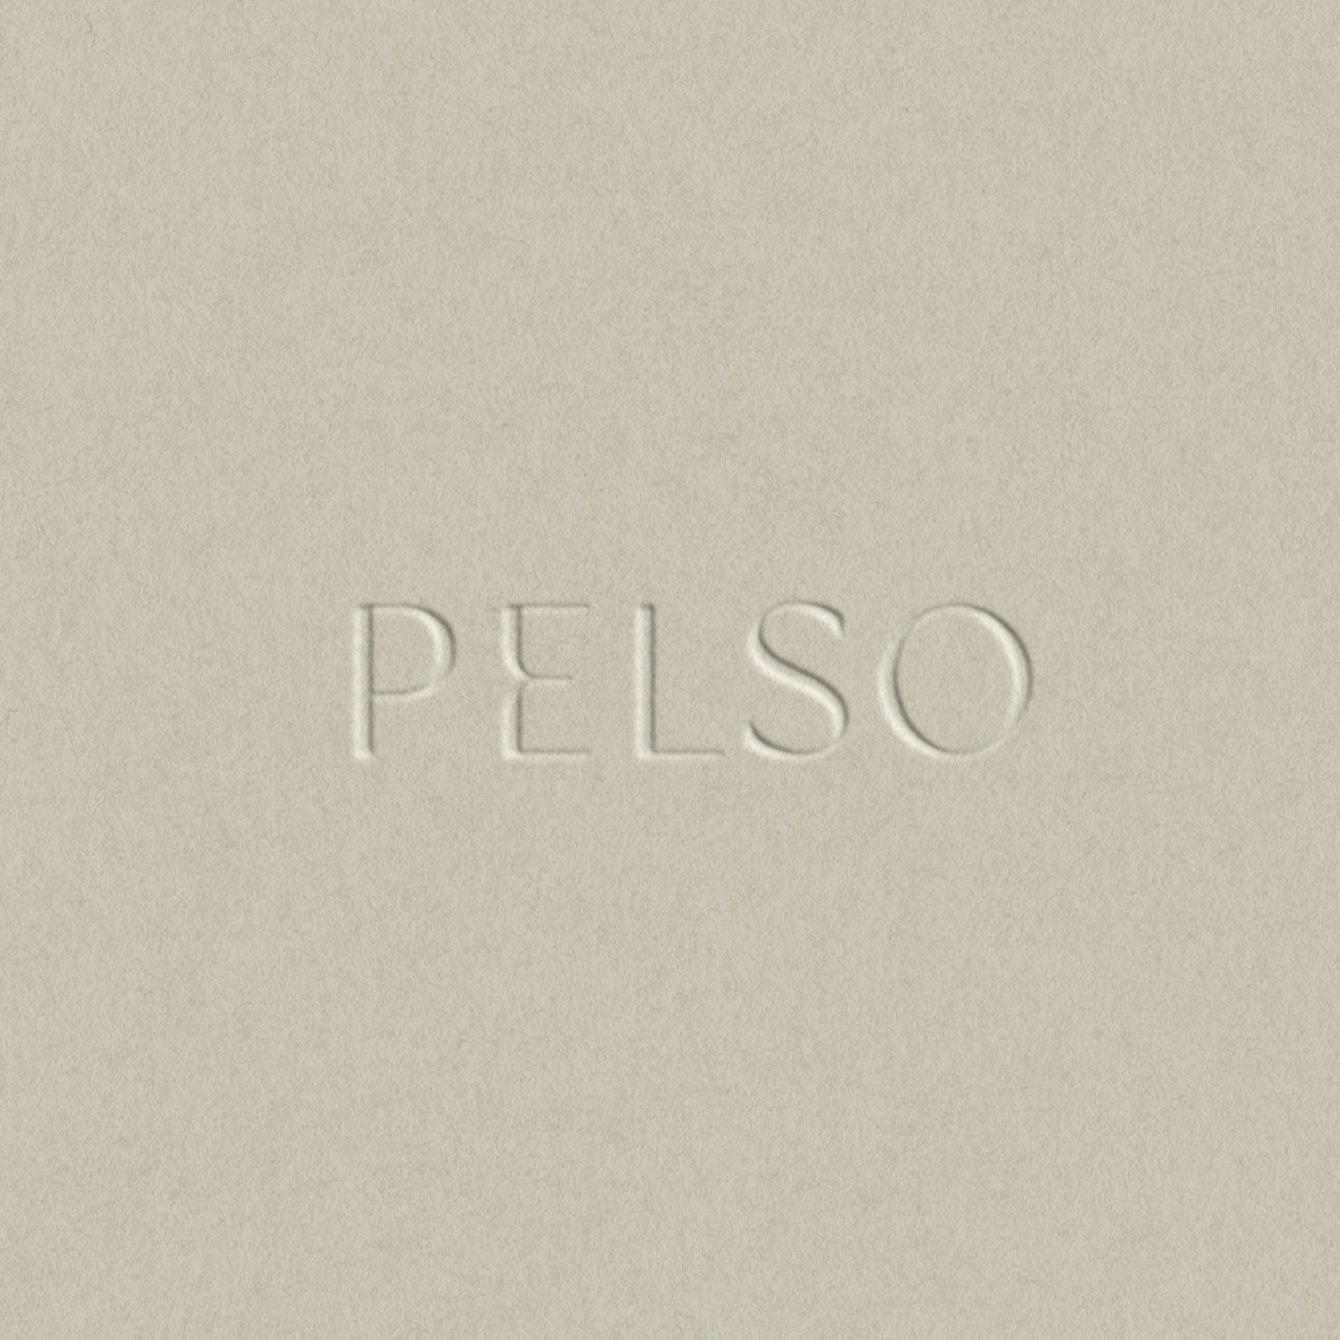 Pelso_Logo.jpg